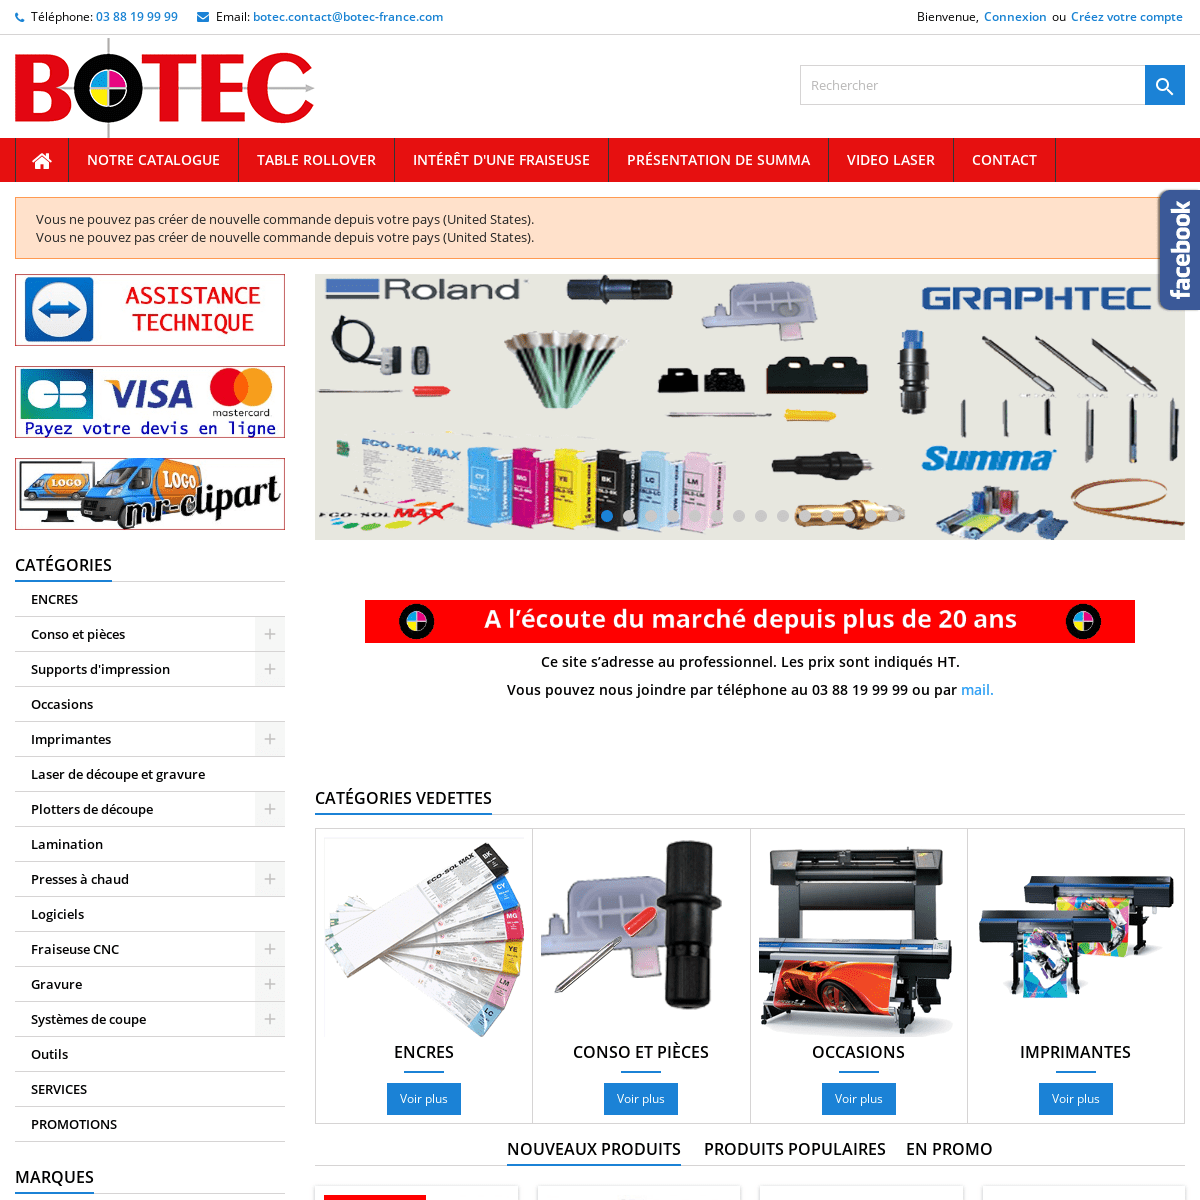 A complete backup of botec-france.com